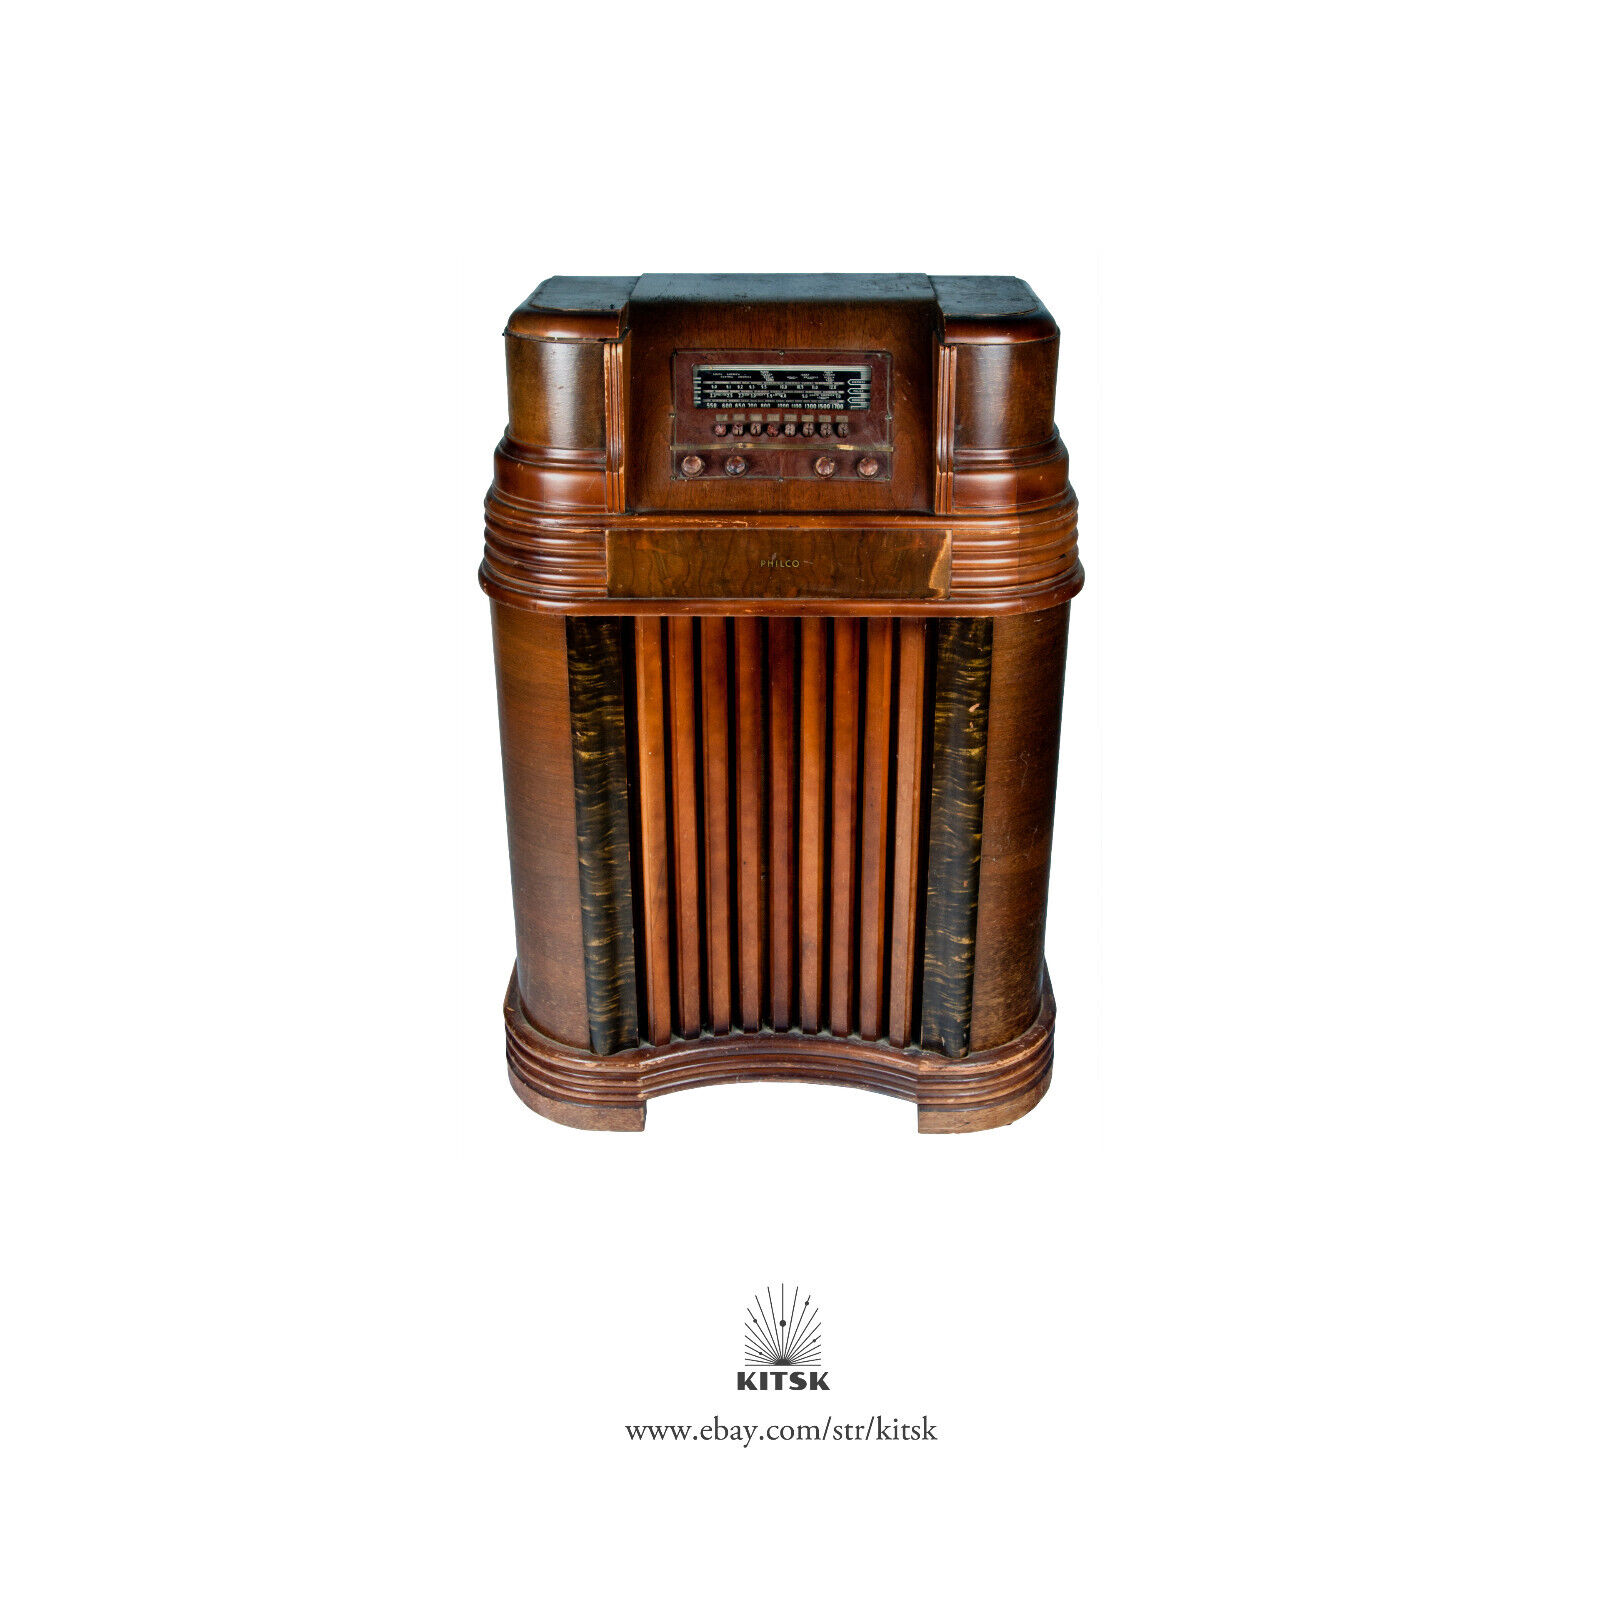 Art Deco Style Philco Wood Tube Radio Model 41-280